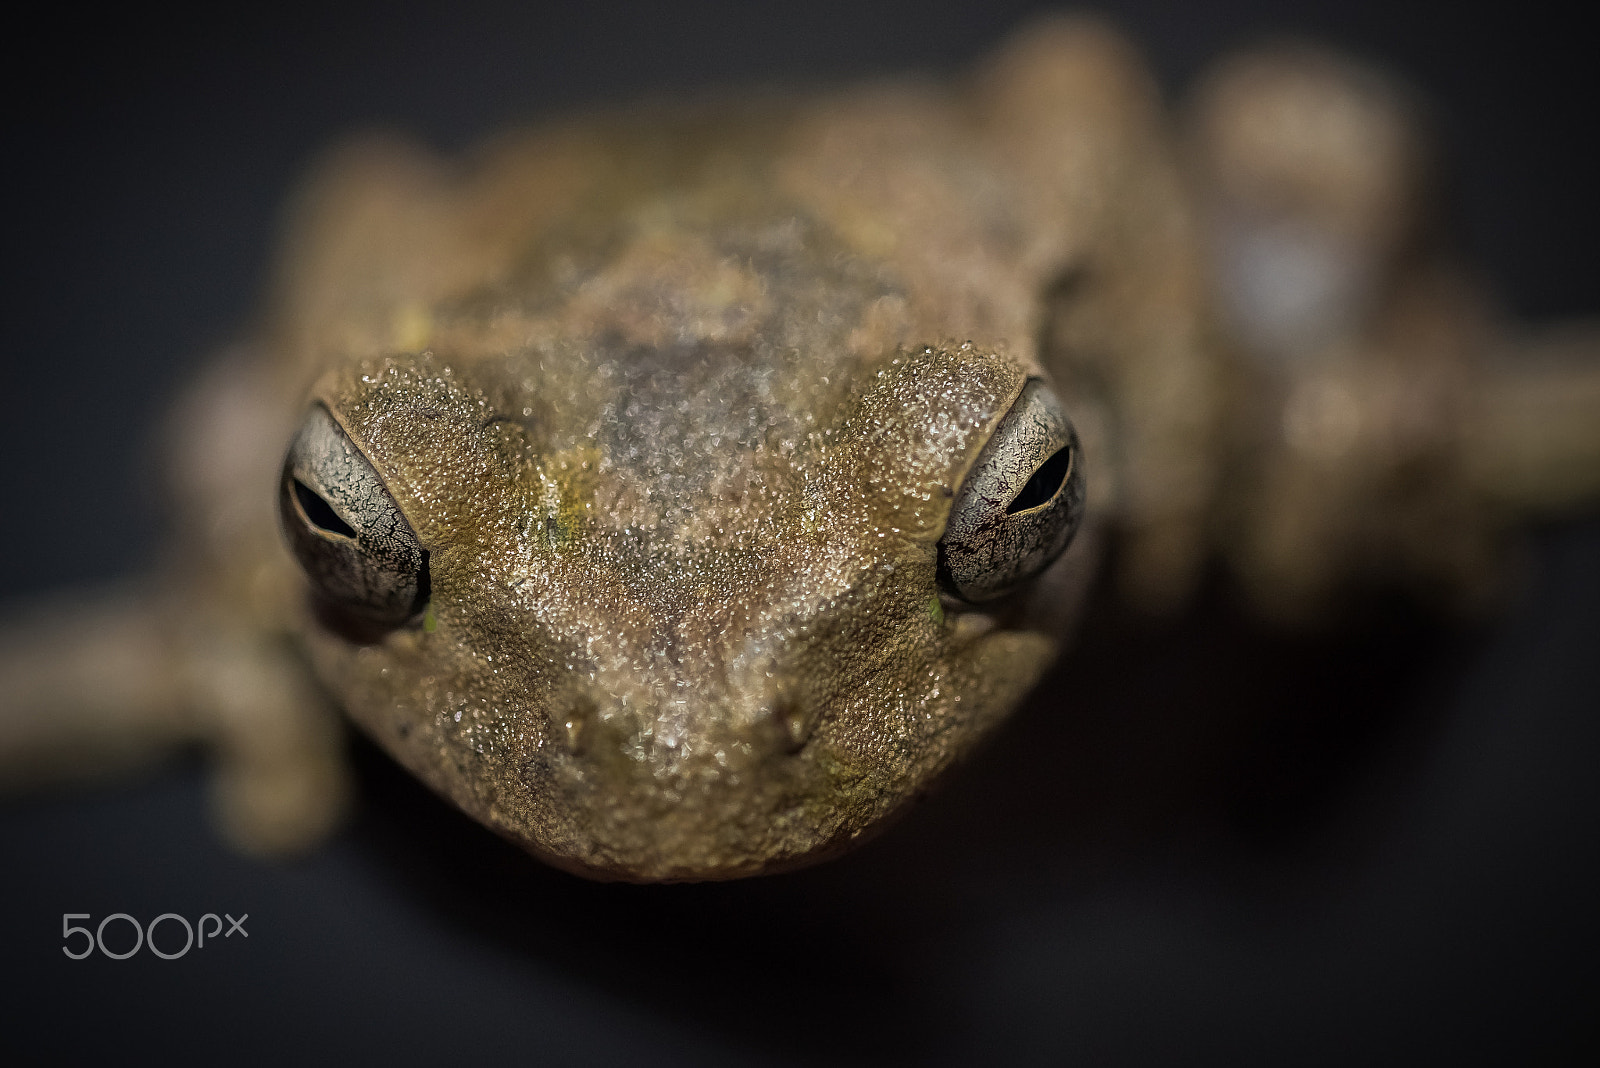 Nikon D750 sample photo. Curious frog photography